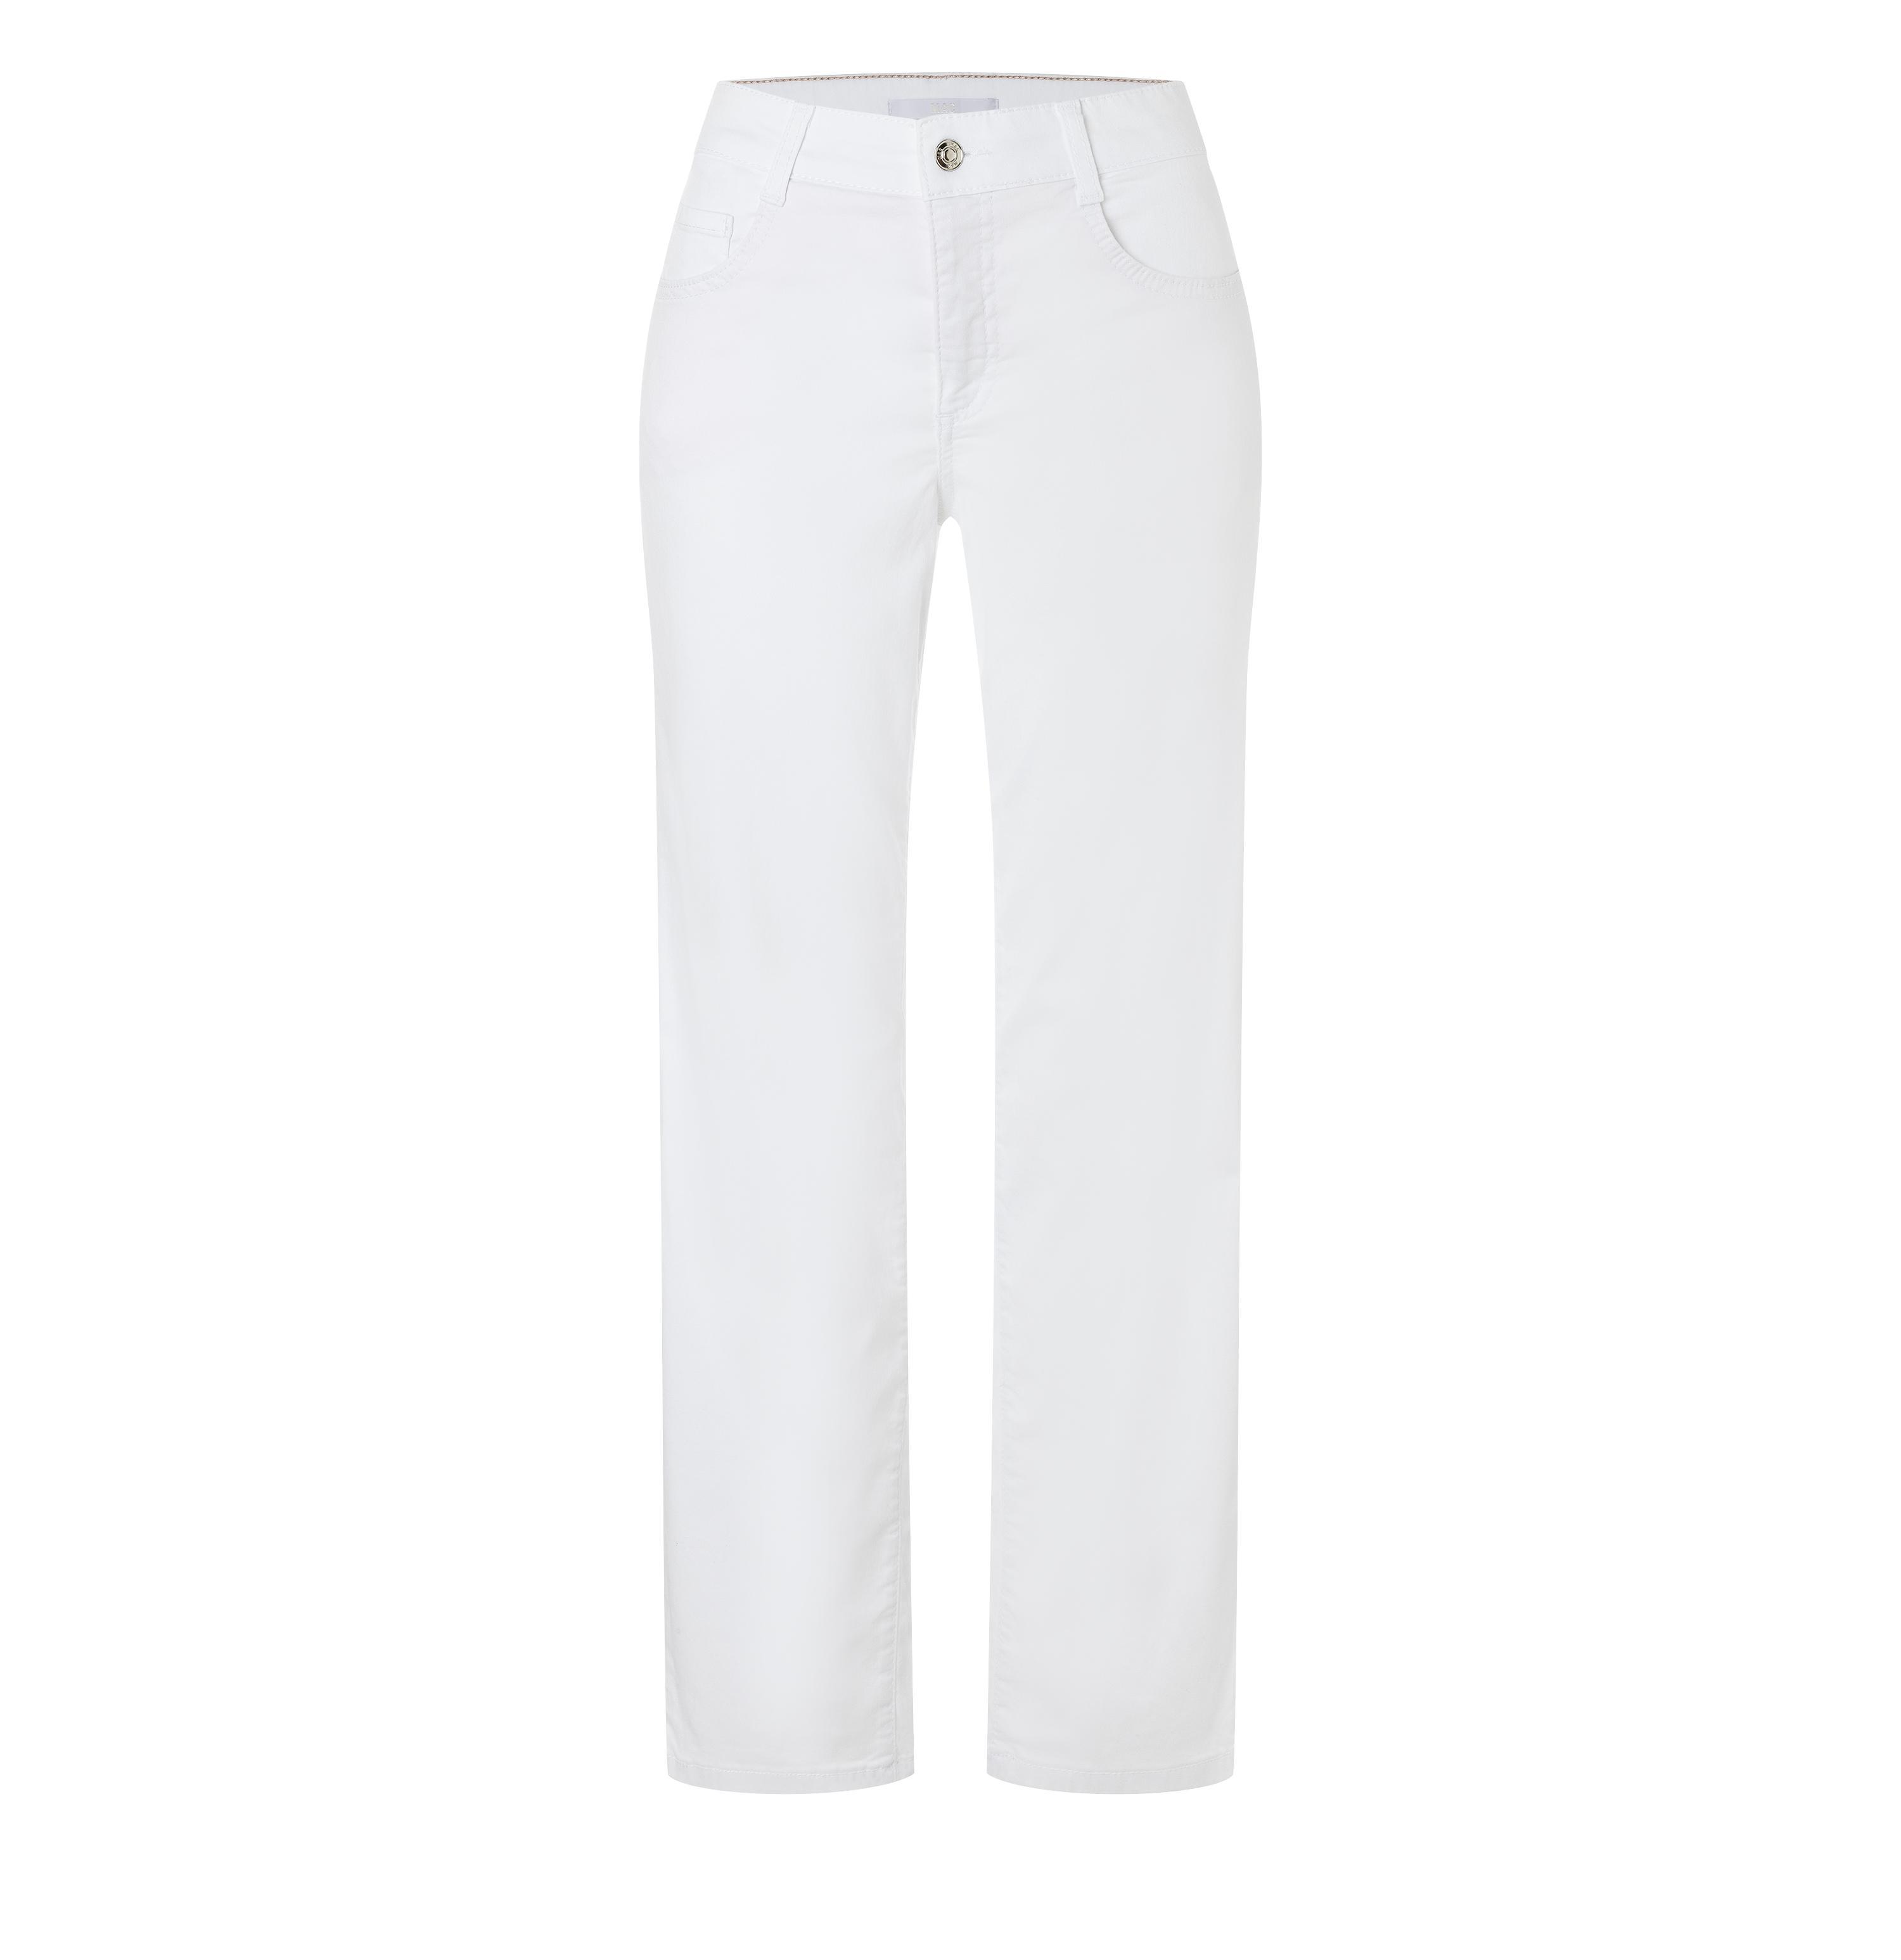 MAC Damenhose, Shop Jeans | Gracia, Weight, AT weiß - Light D010